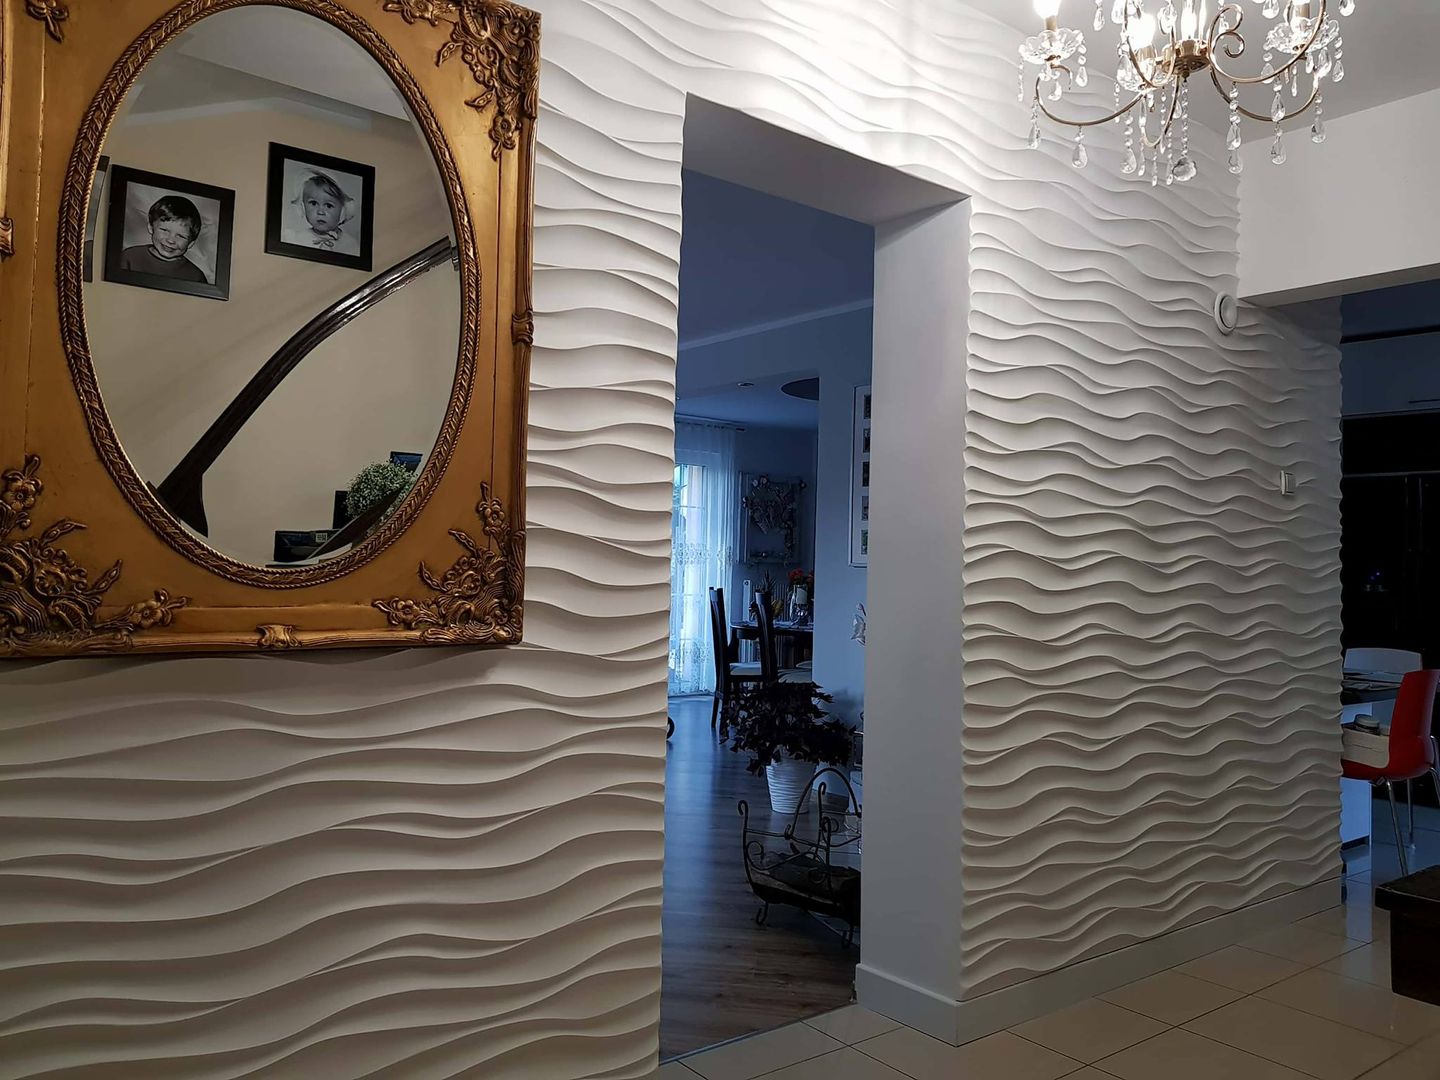 Realizacja od klientów- Panele 3d- Model 1, Steindecor Steindecor Modern walls & floors